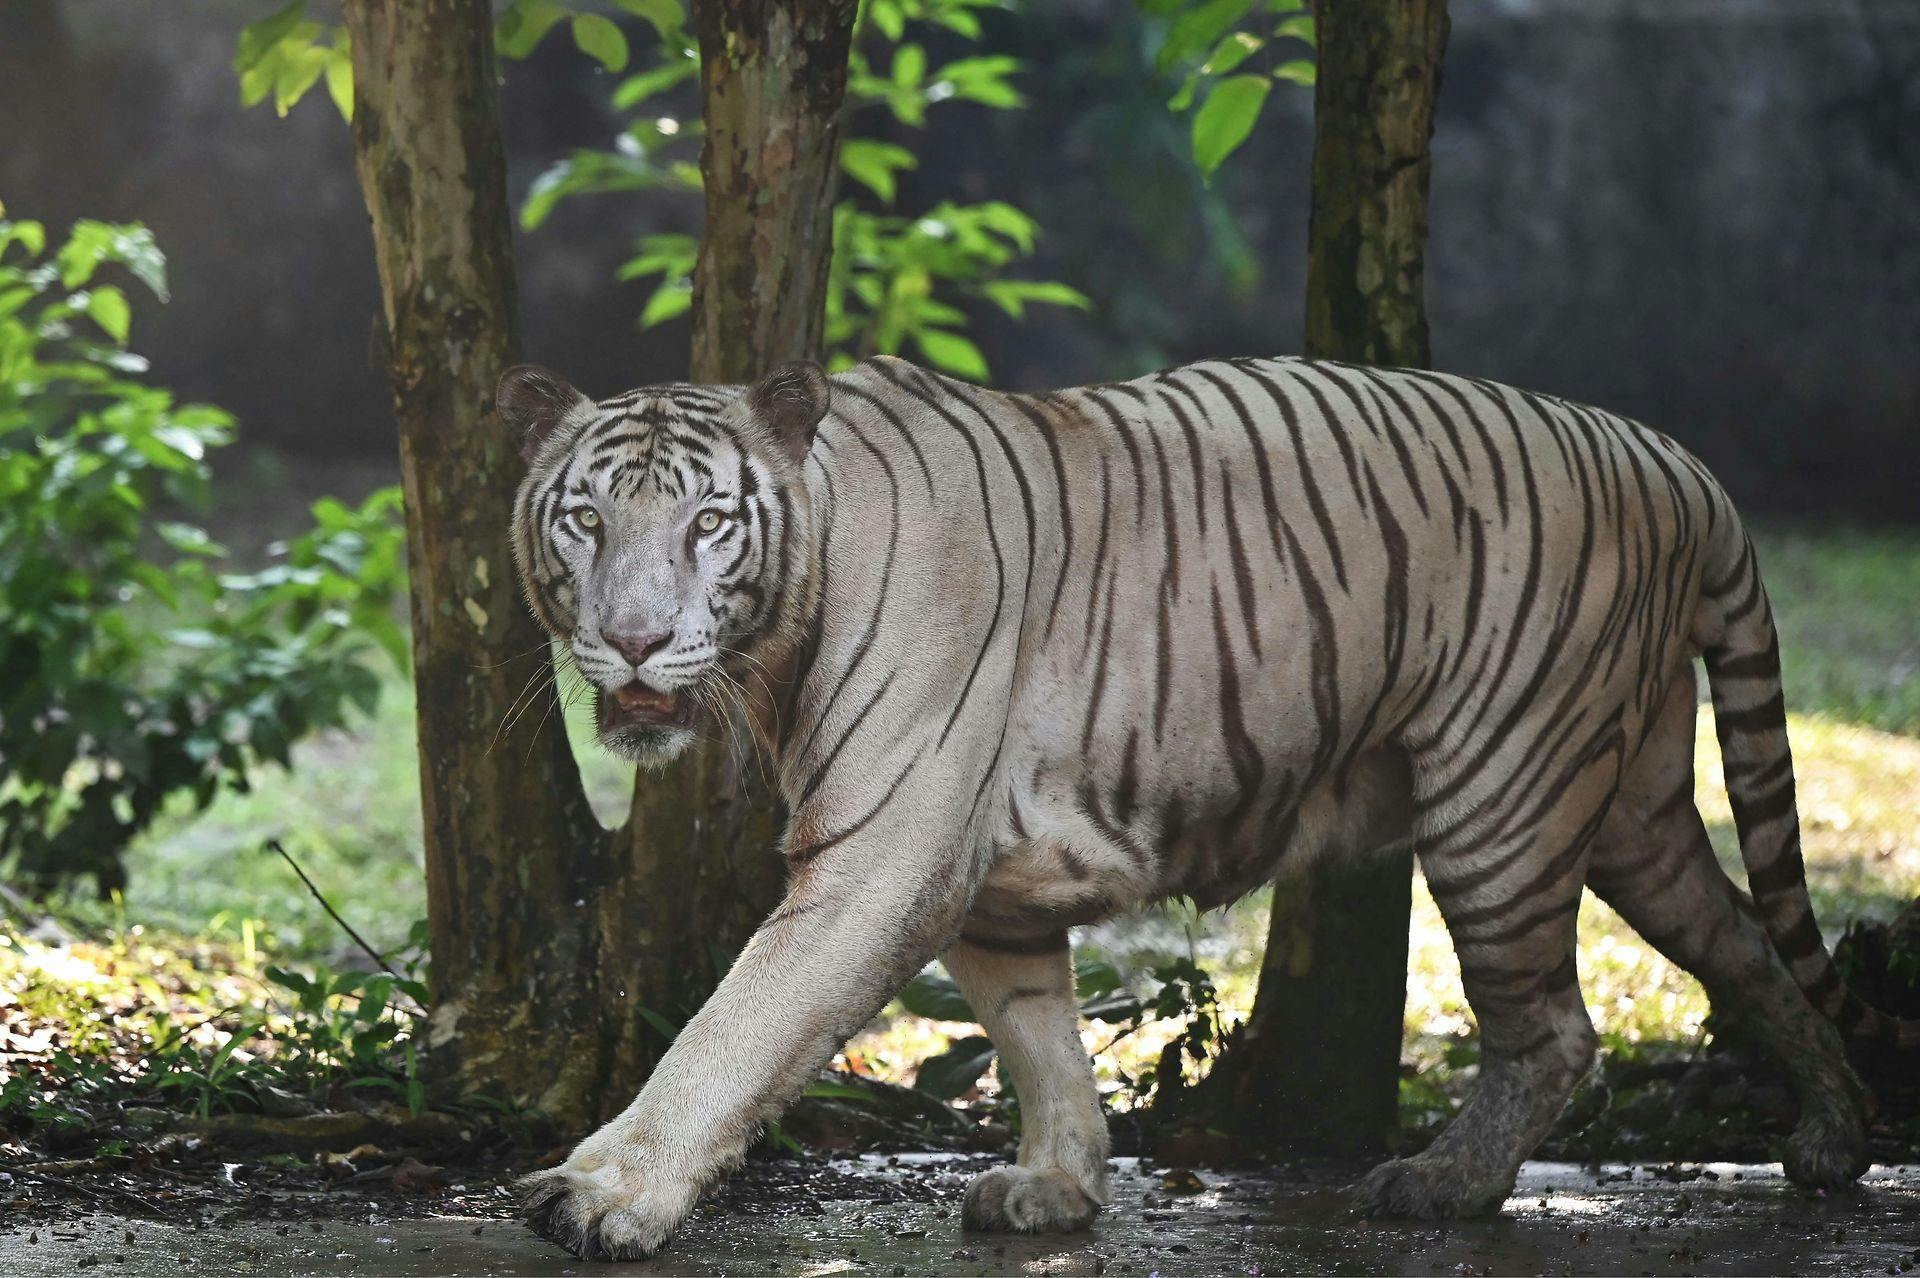 Indien er hjemsted for 70 procent af verdens vilde tigre ifølge BBC.